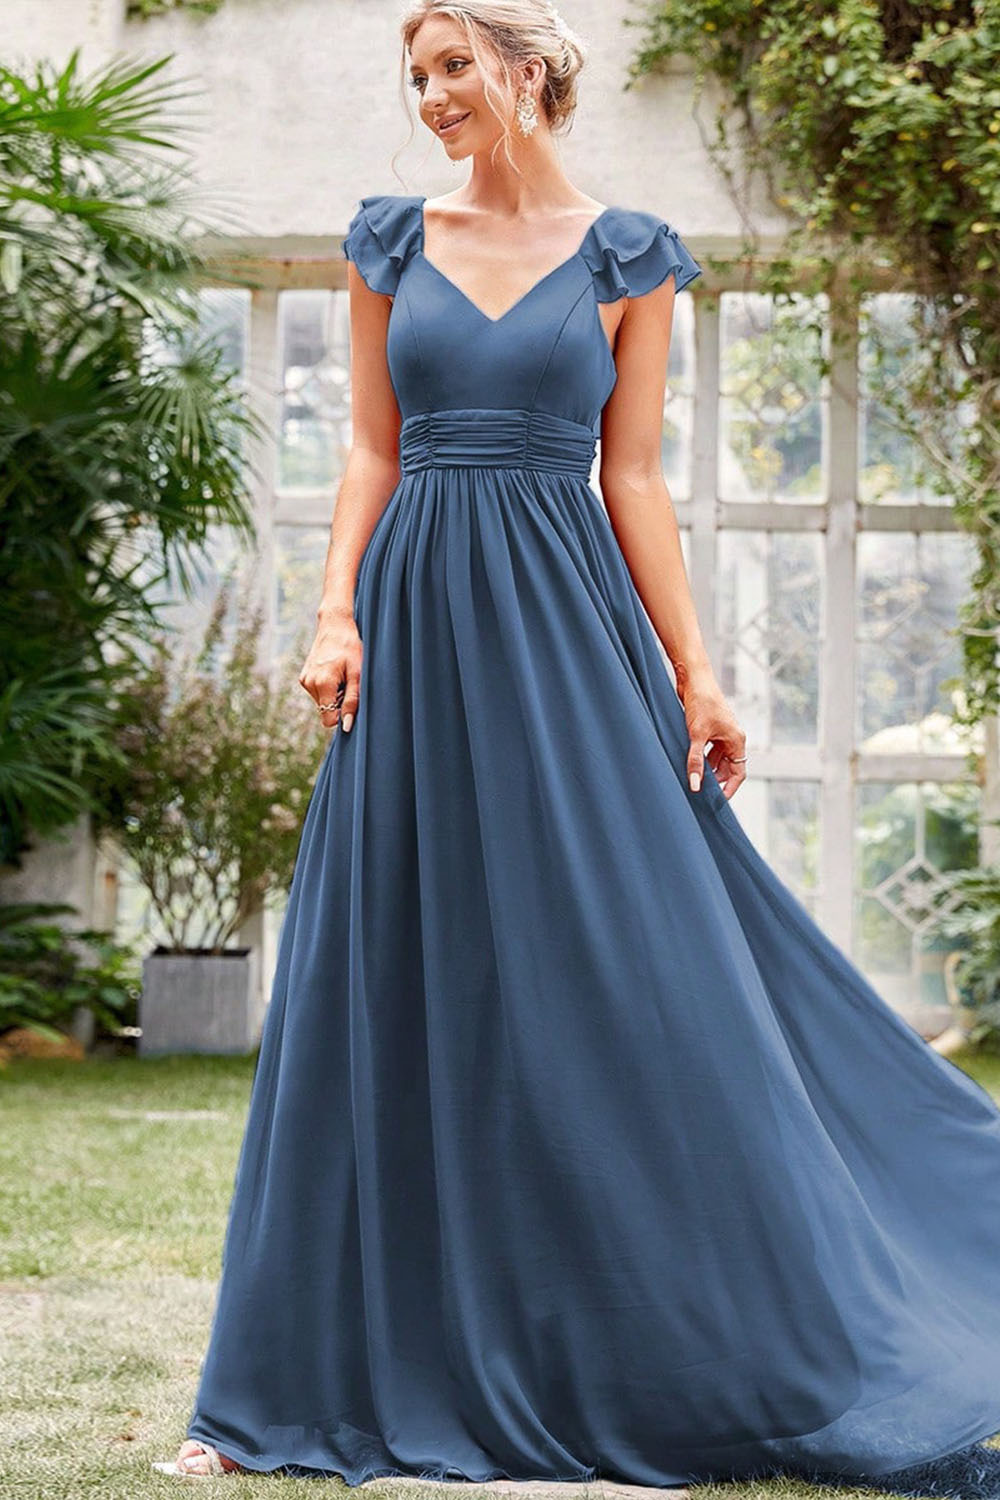 Wedding Guest Dusty Blue Chiffon V Neck Ruffle Maxi Dress